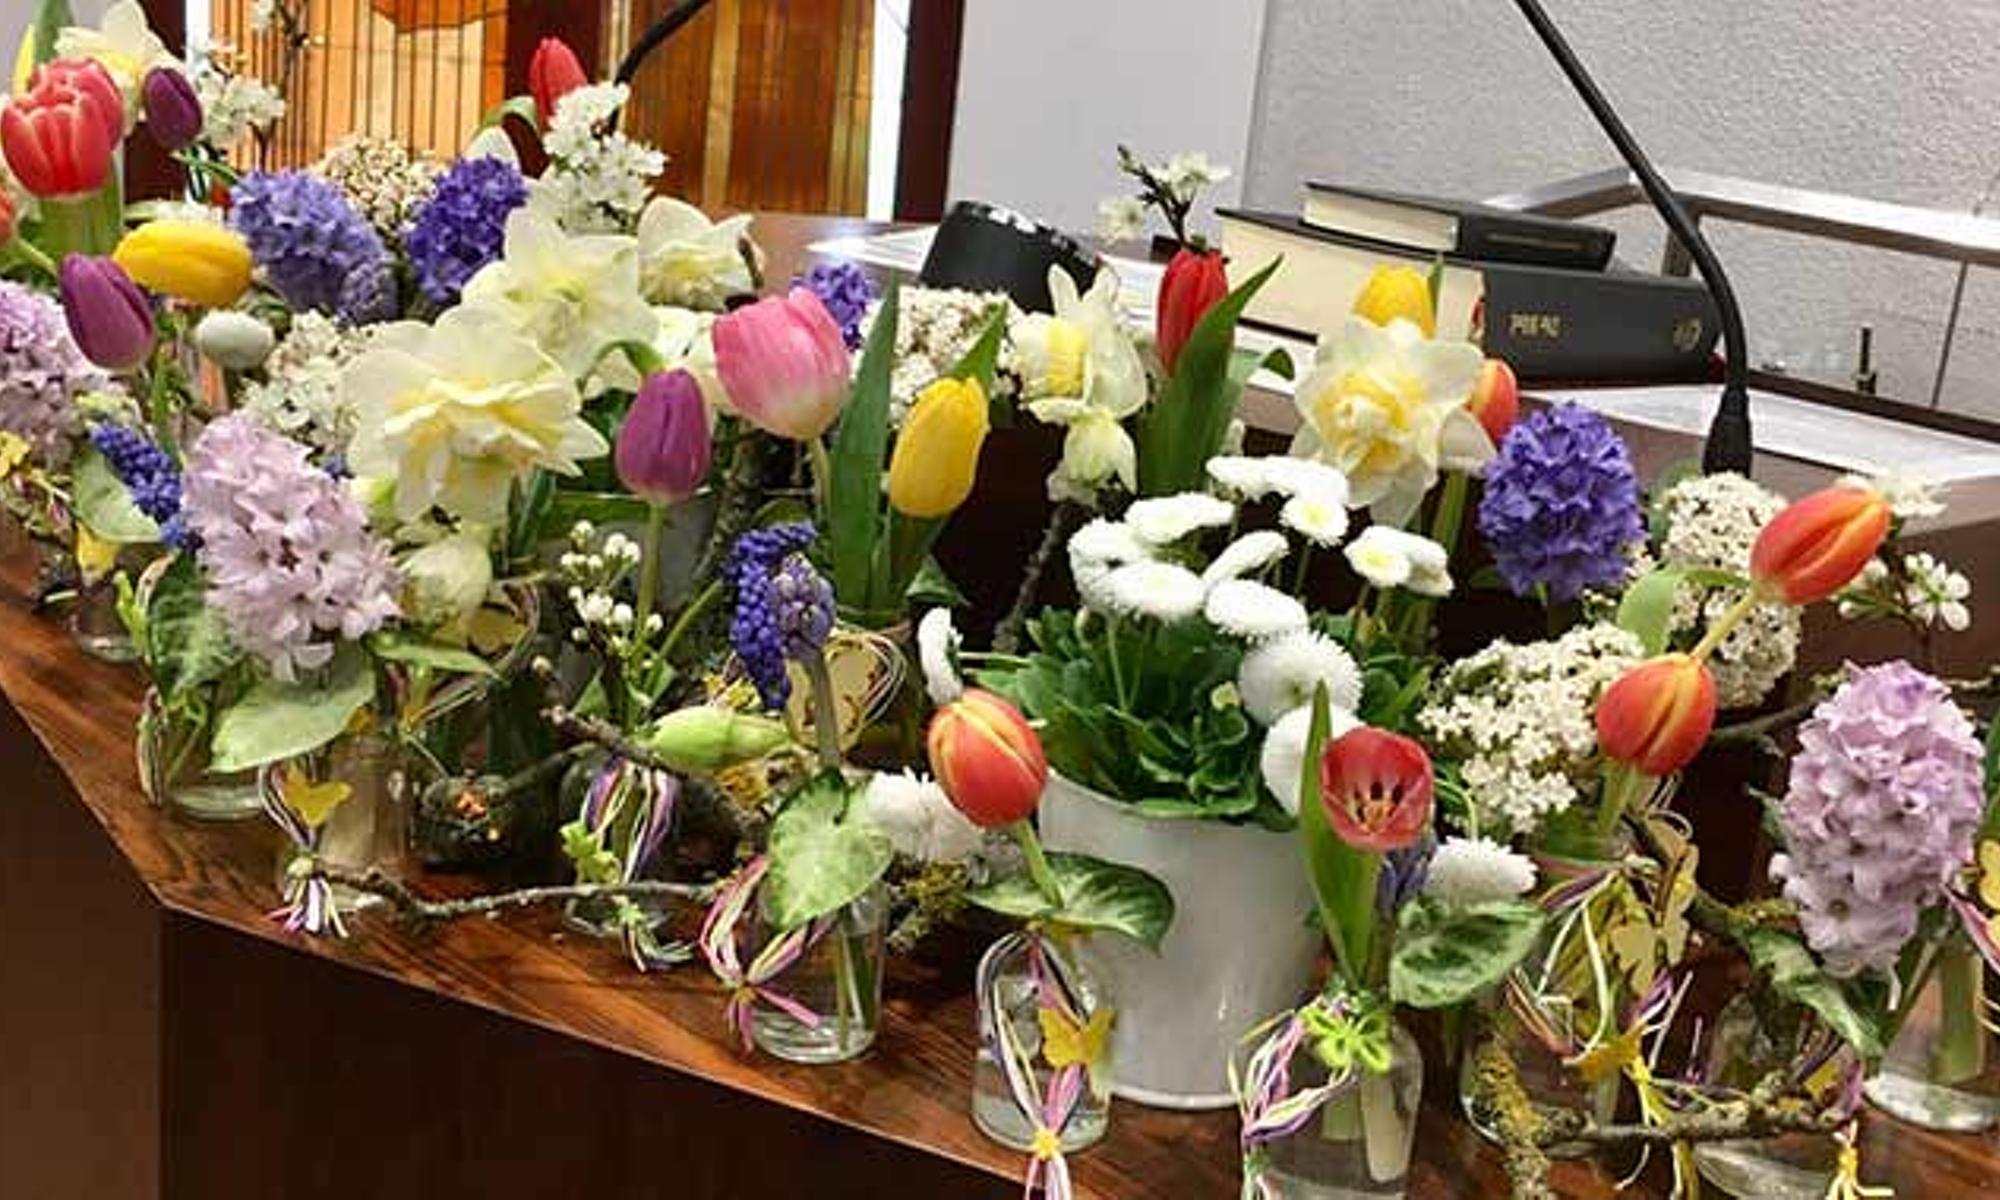 Frühlingshafter Blumenschmuck am Altar